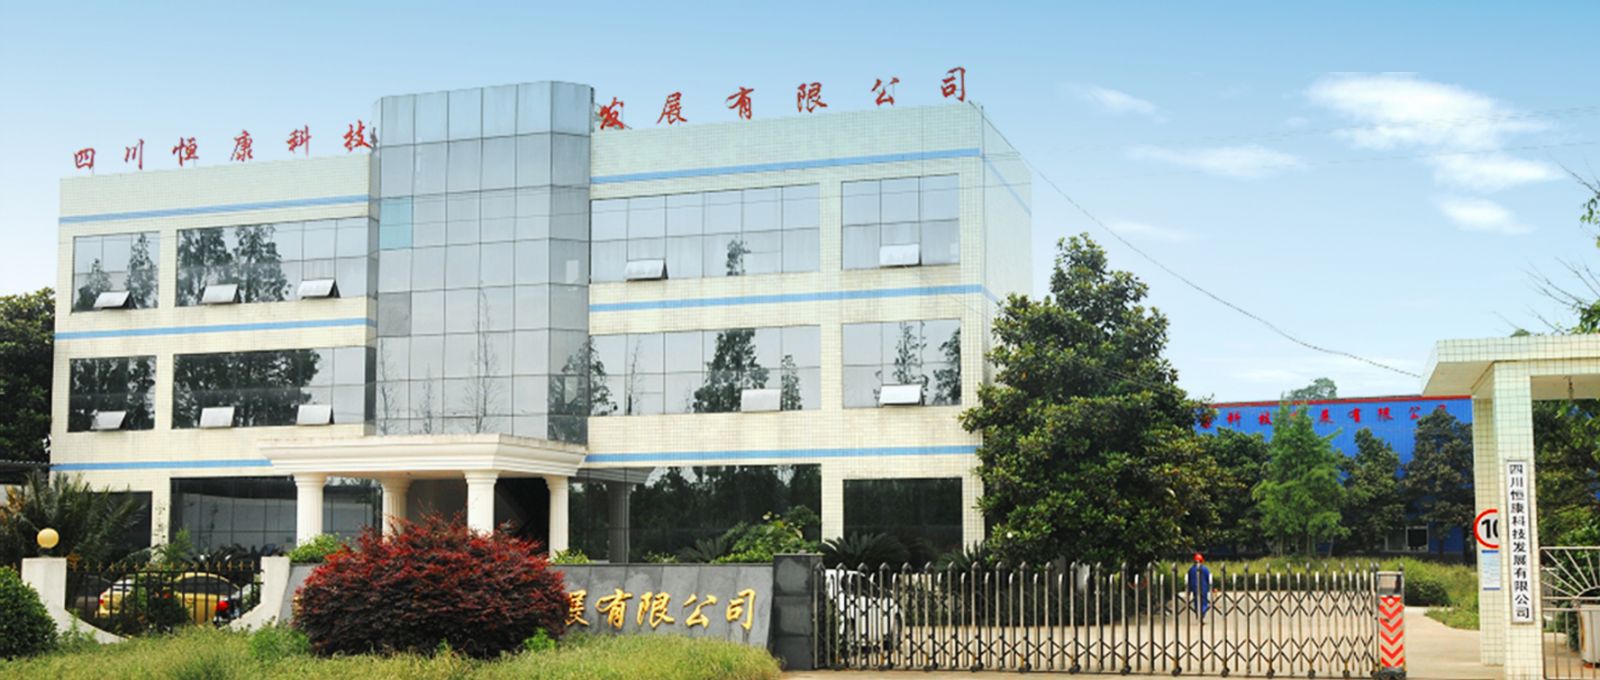 Sichuan Hengkang Science and Technology Development Co., Ltd.